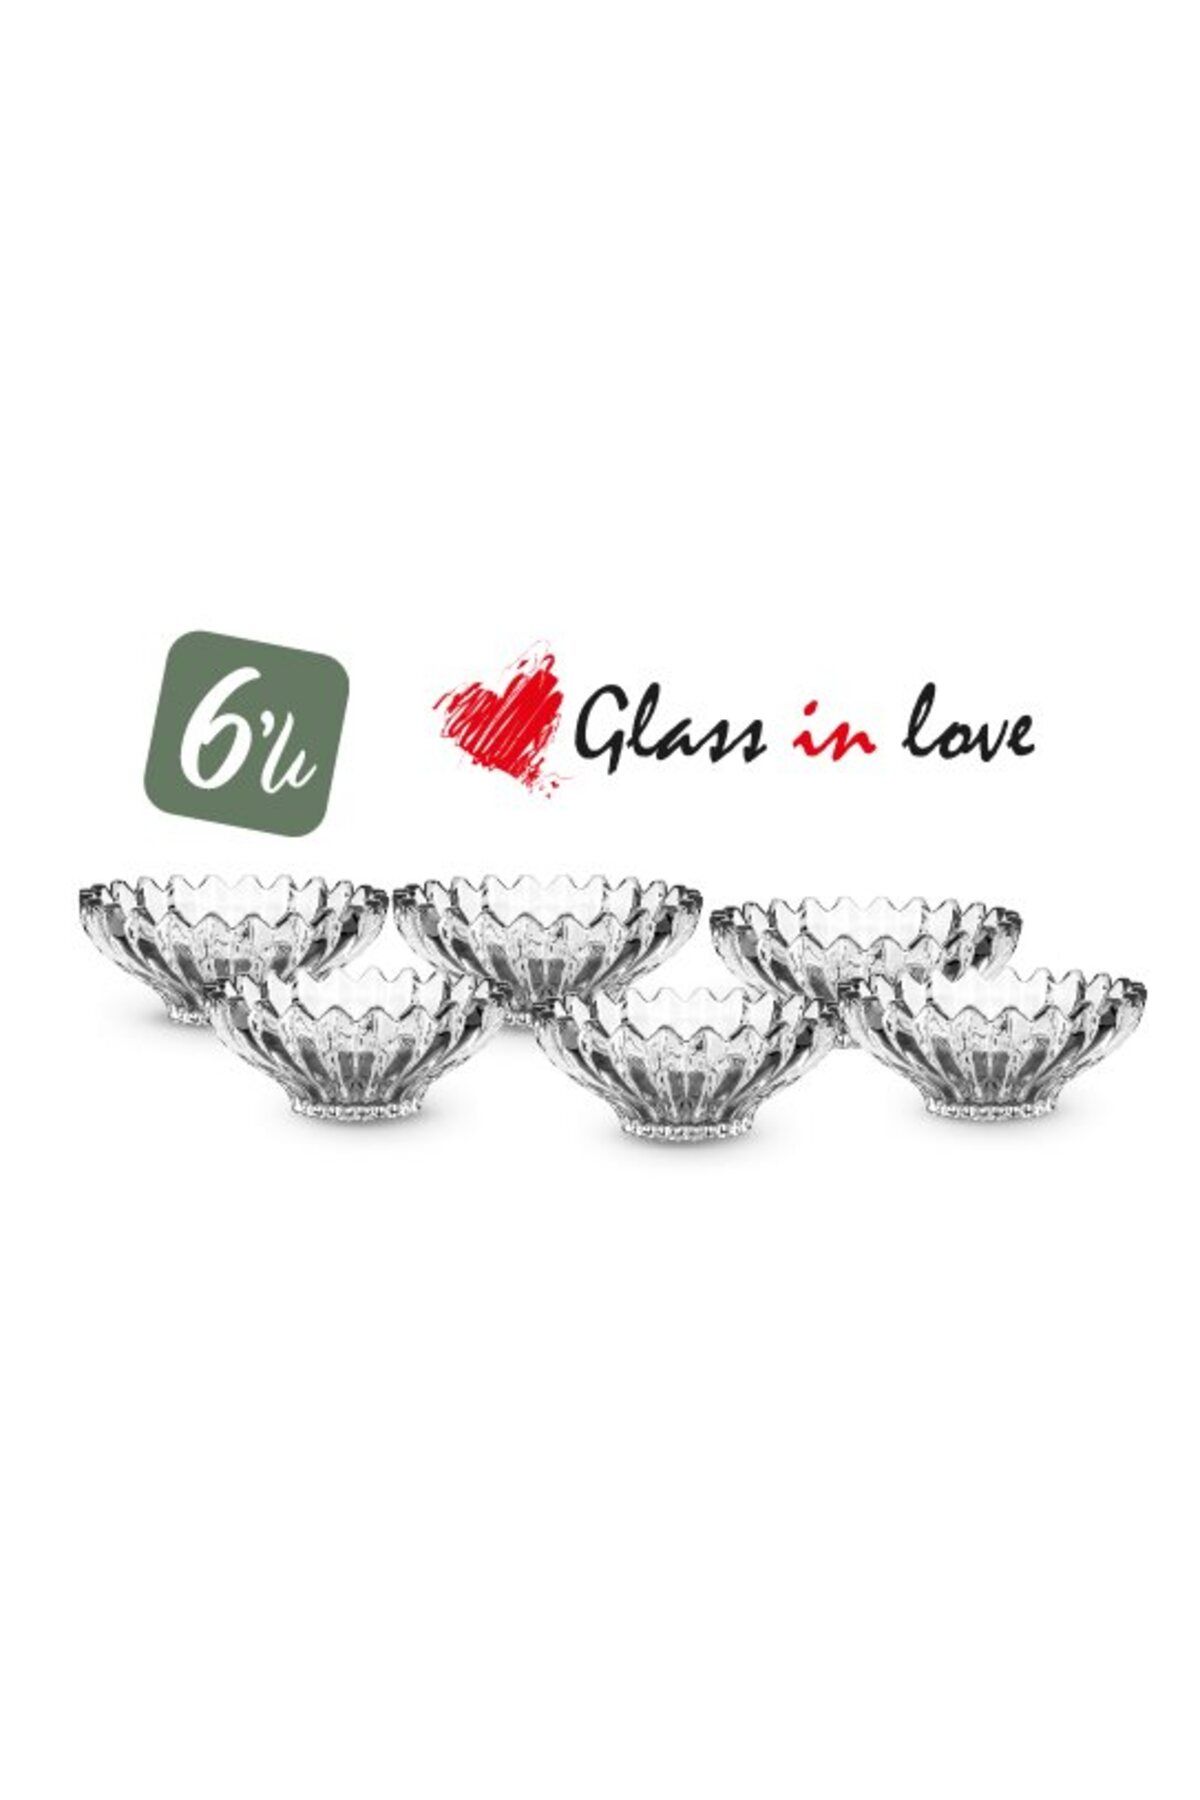 Glass In Love Glass İn Love Cam Kase 6 lı